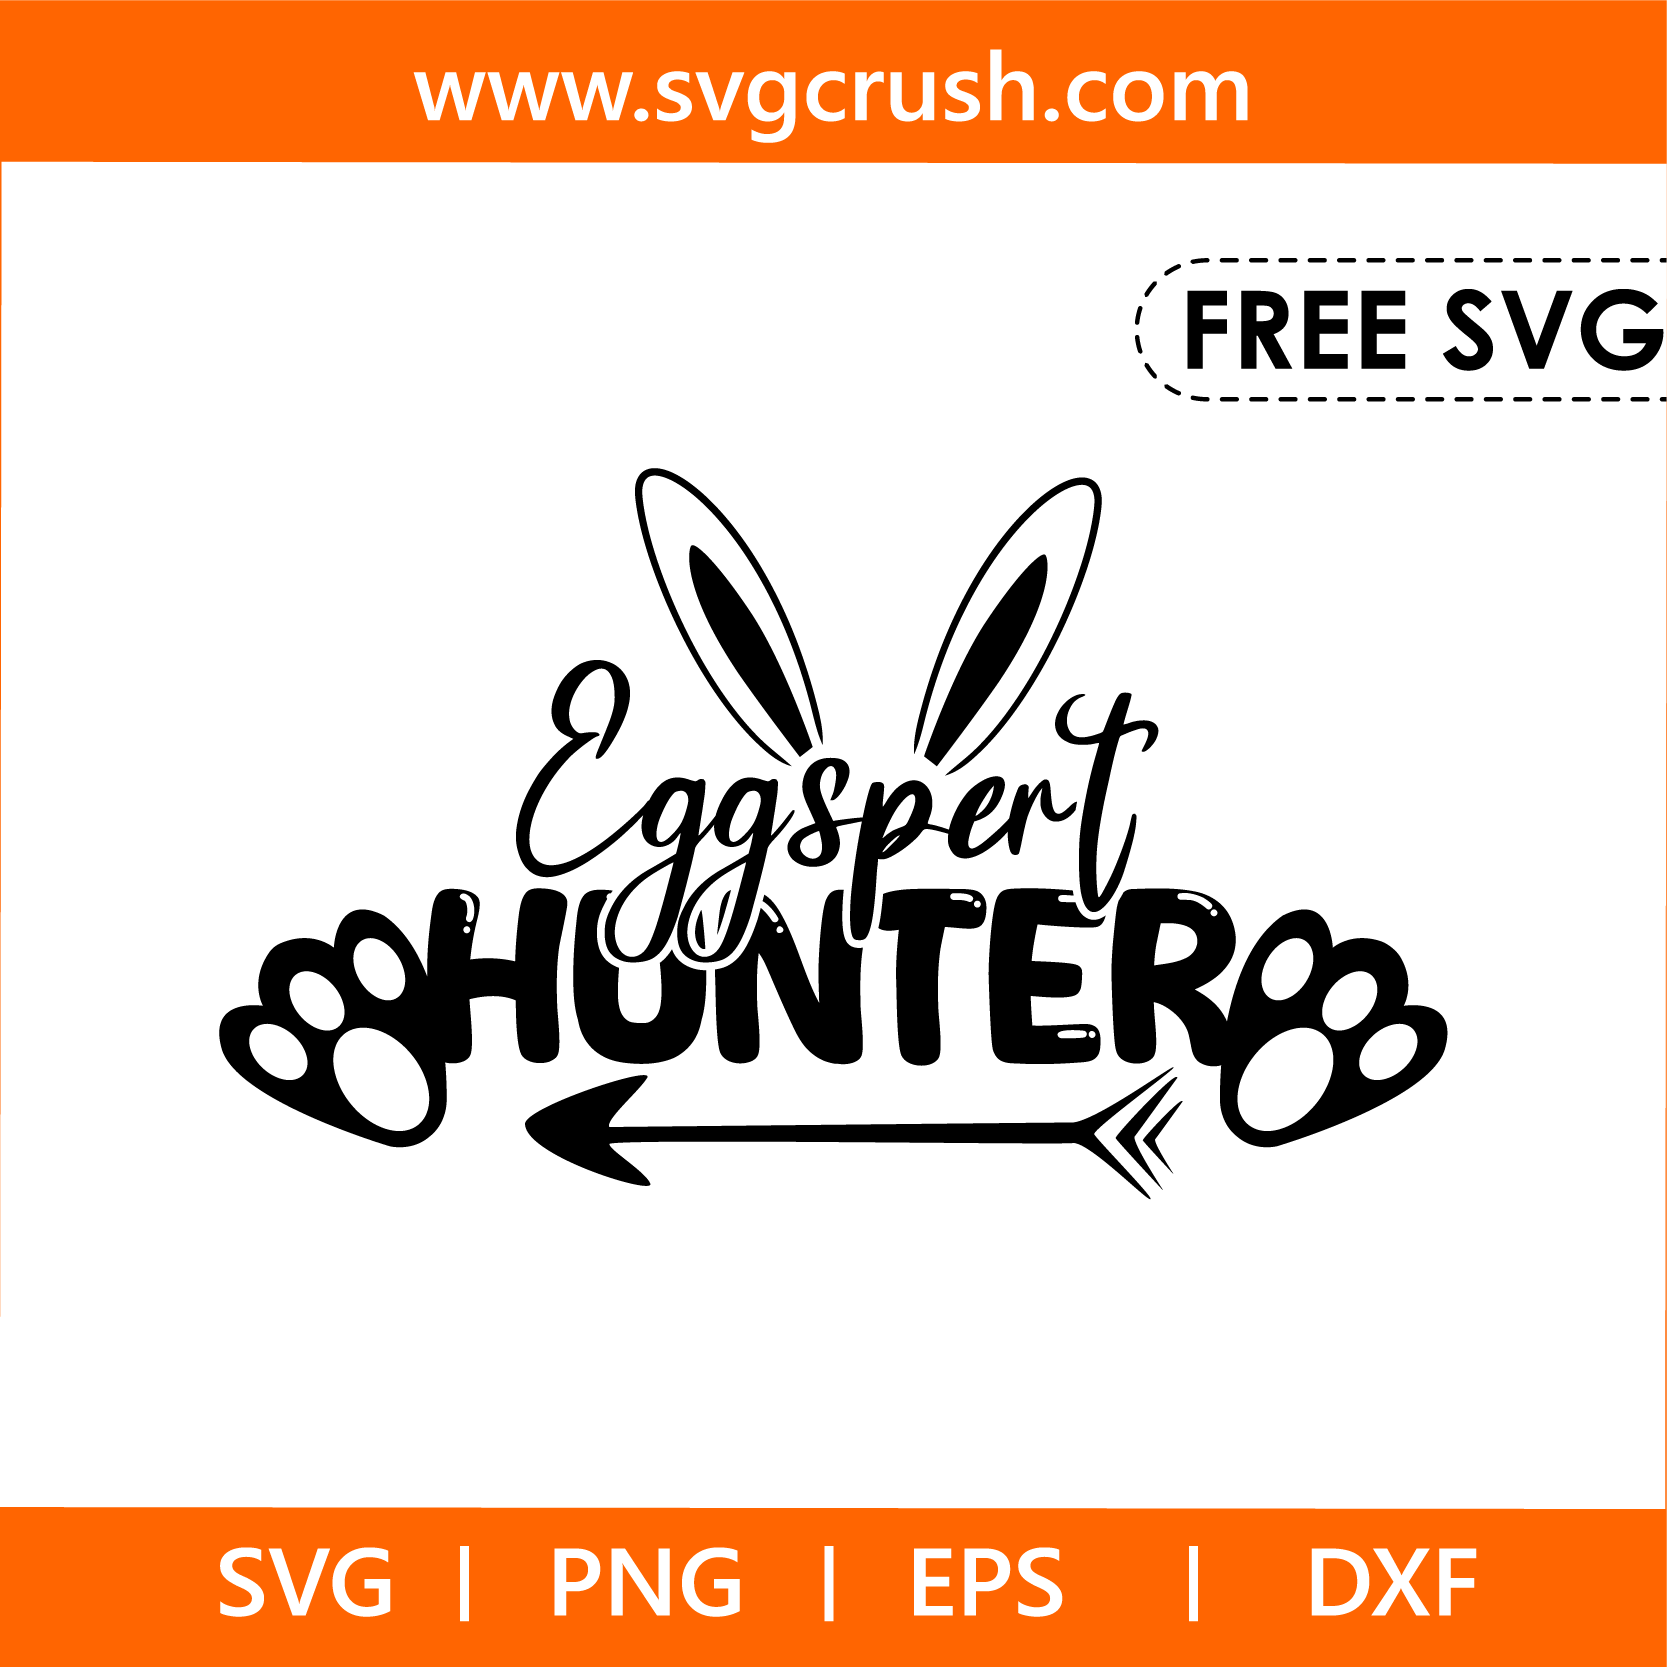 free eggspert-hunter-005 svg